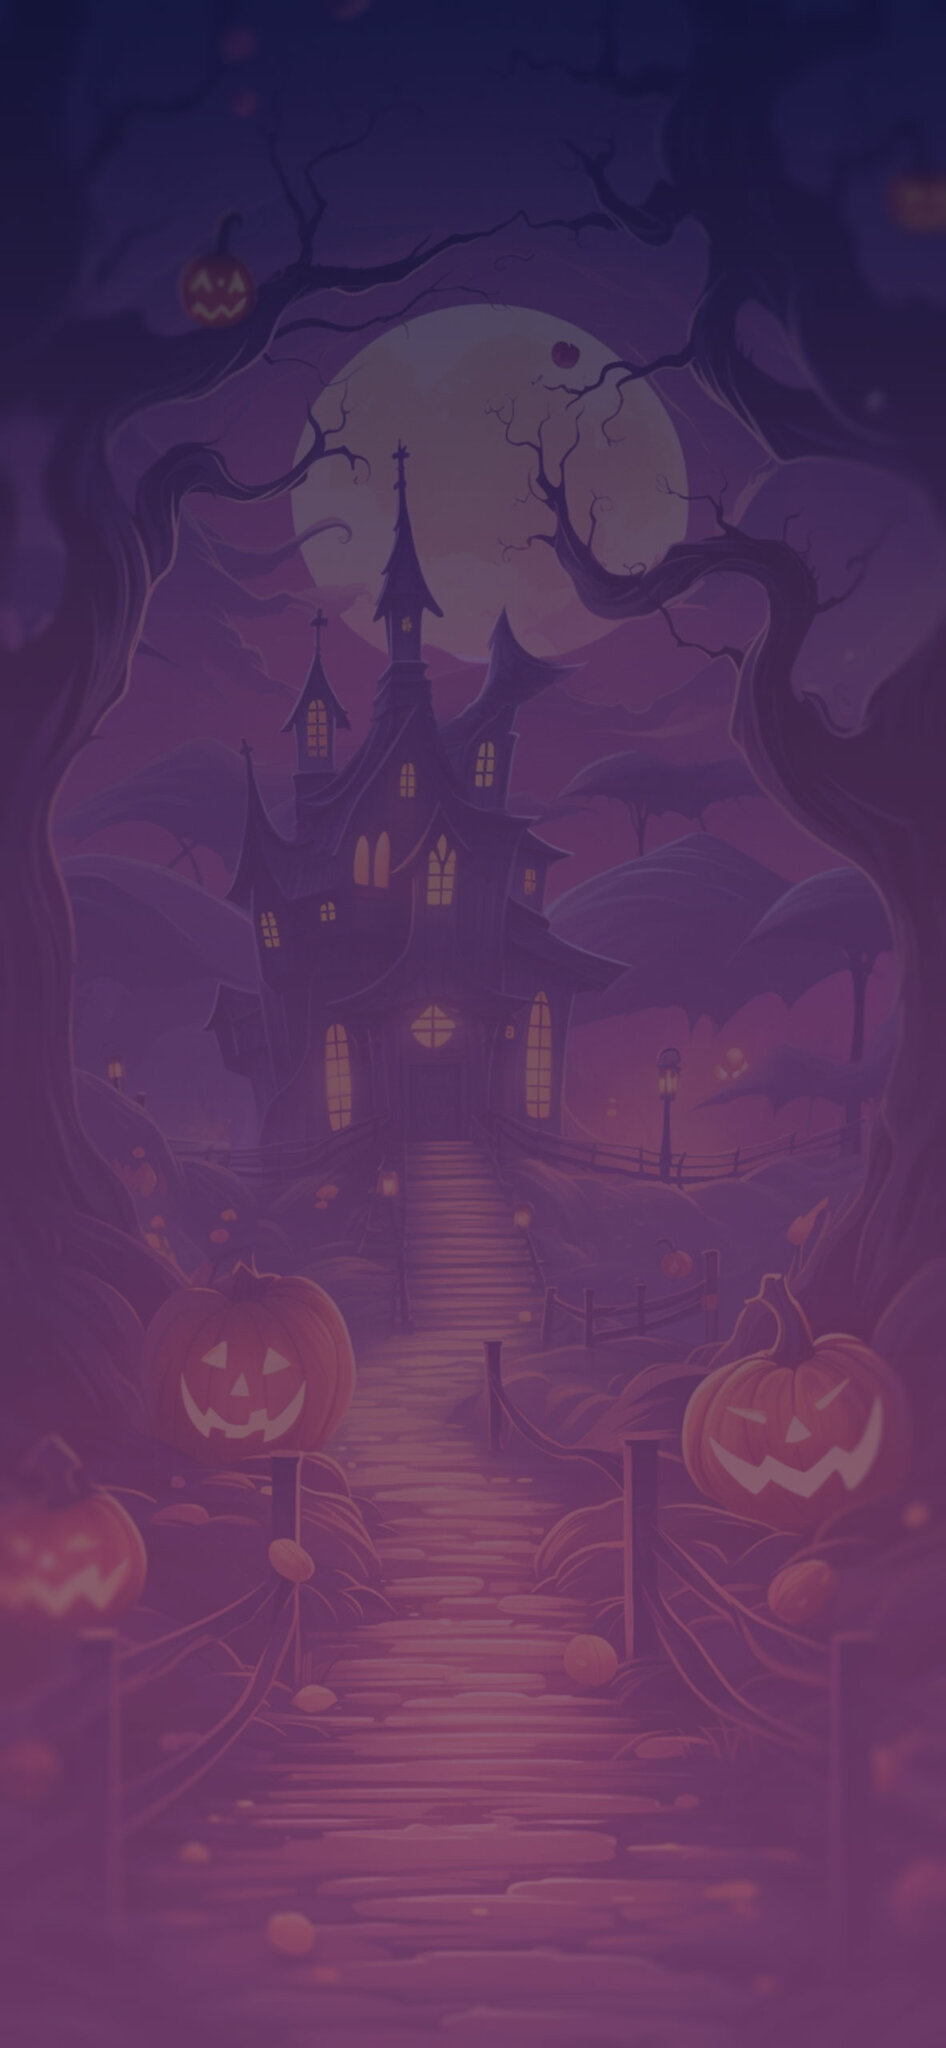 Cartoon Style Halloween Wallpapers - Preppy Halloween Wallpapers